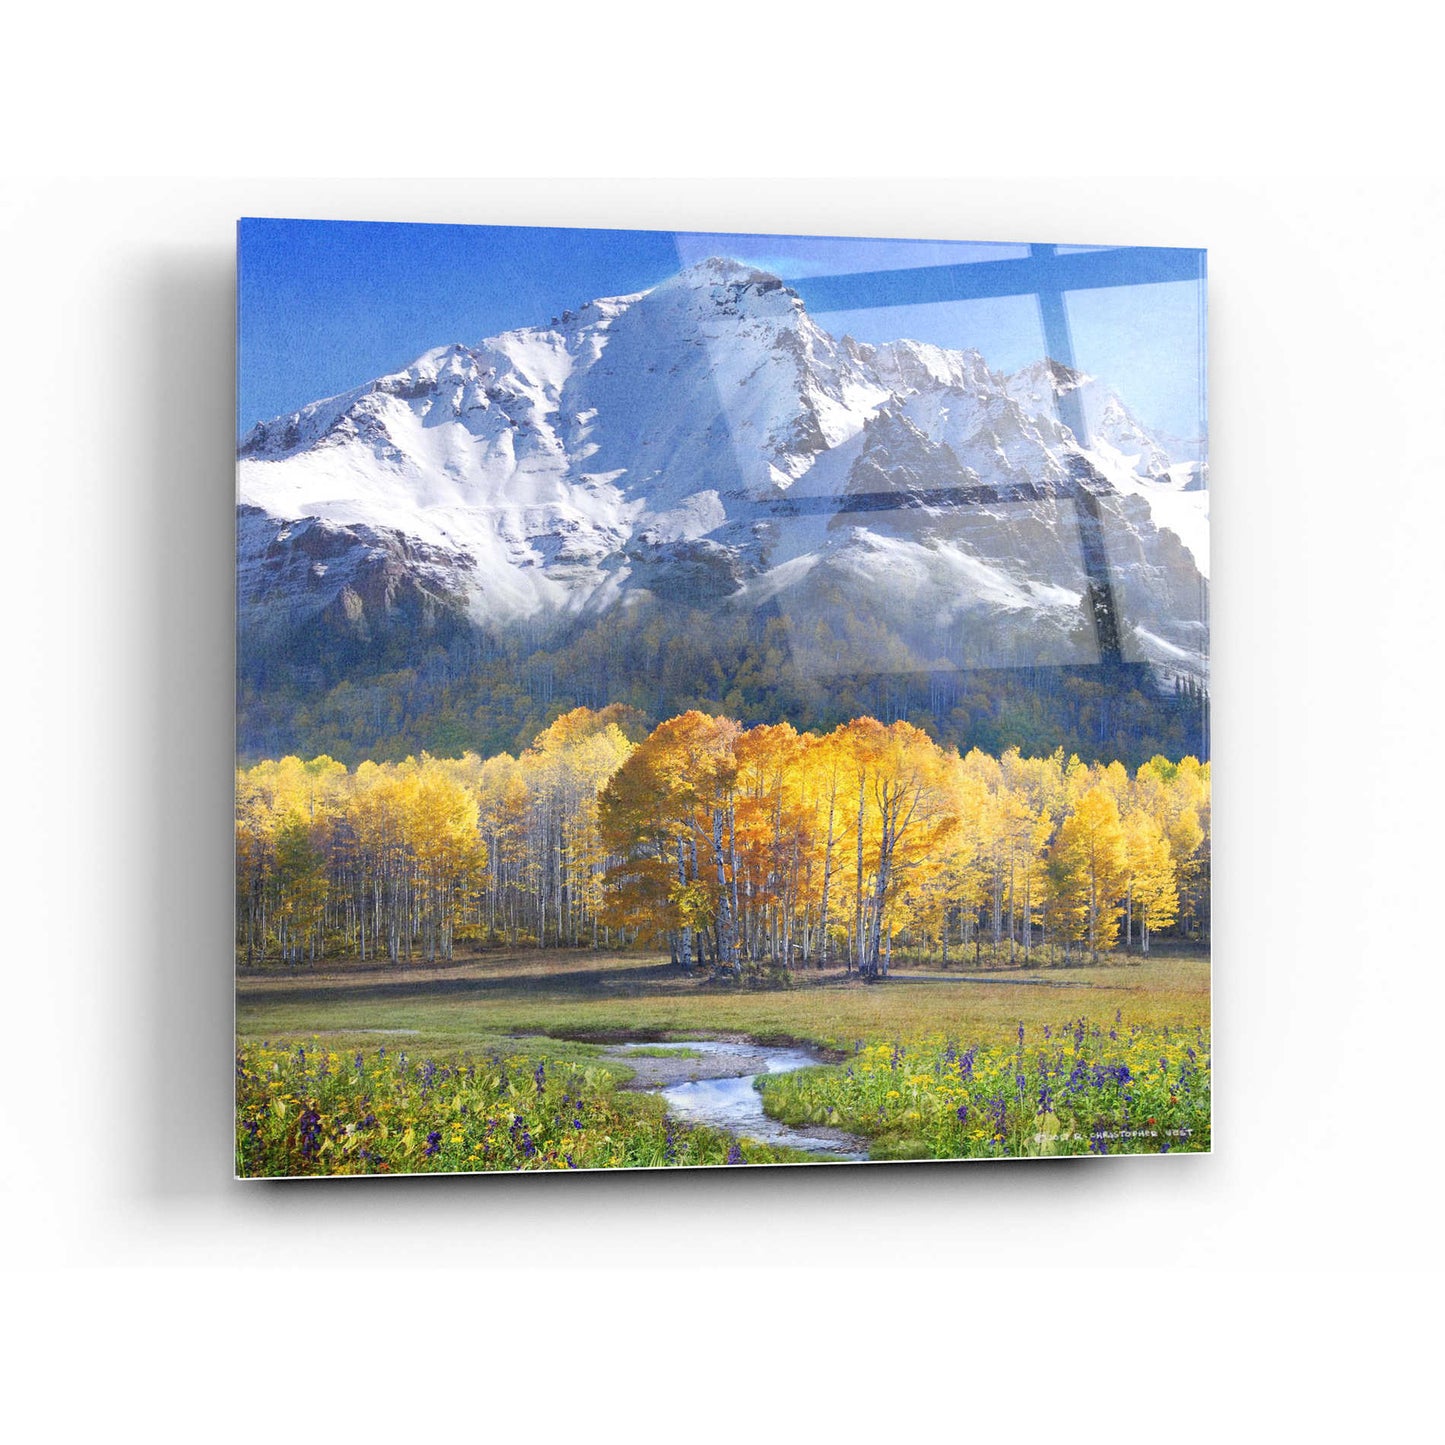 Epic Art 'Idyllic Mountain' by Chris Vest, Acrylic Glass Wall Art,24x24